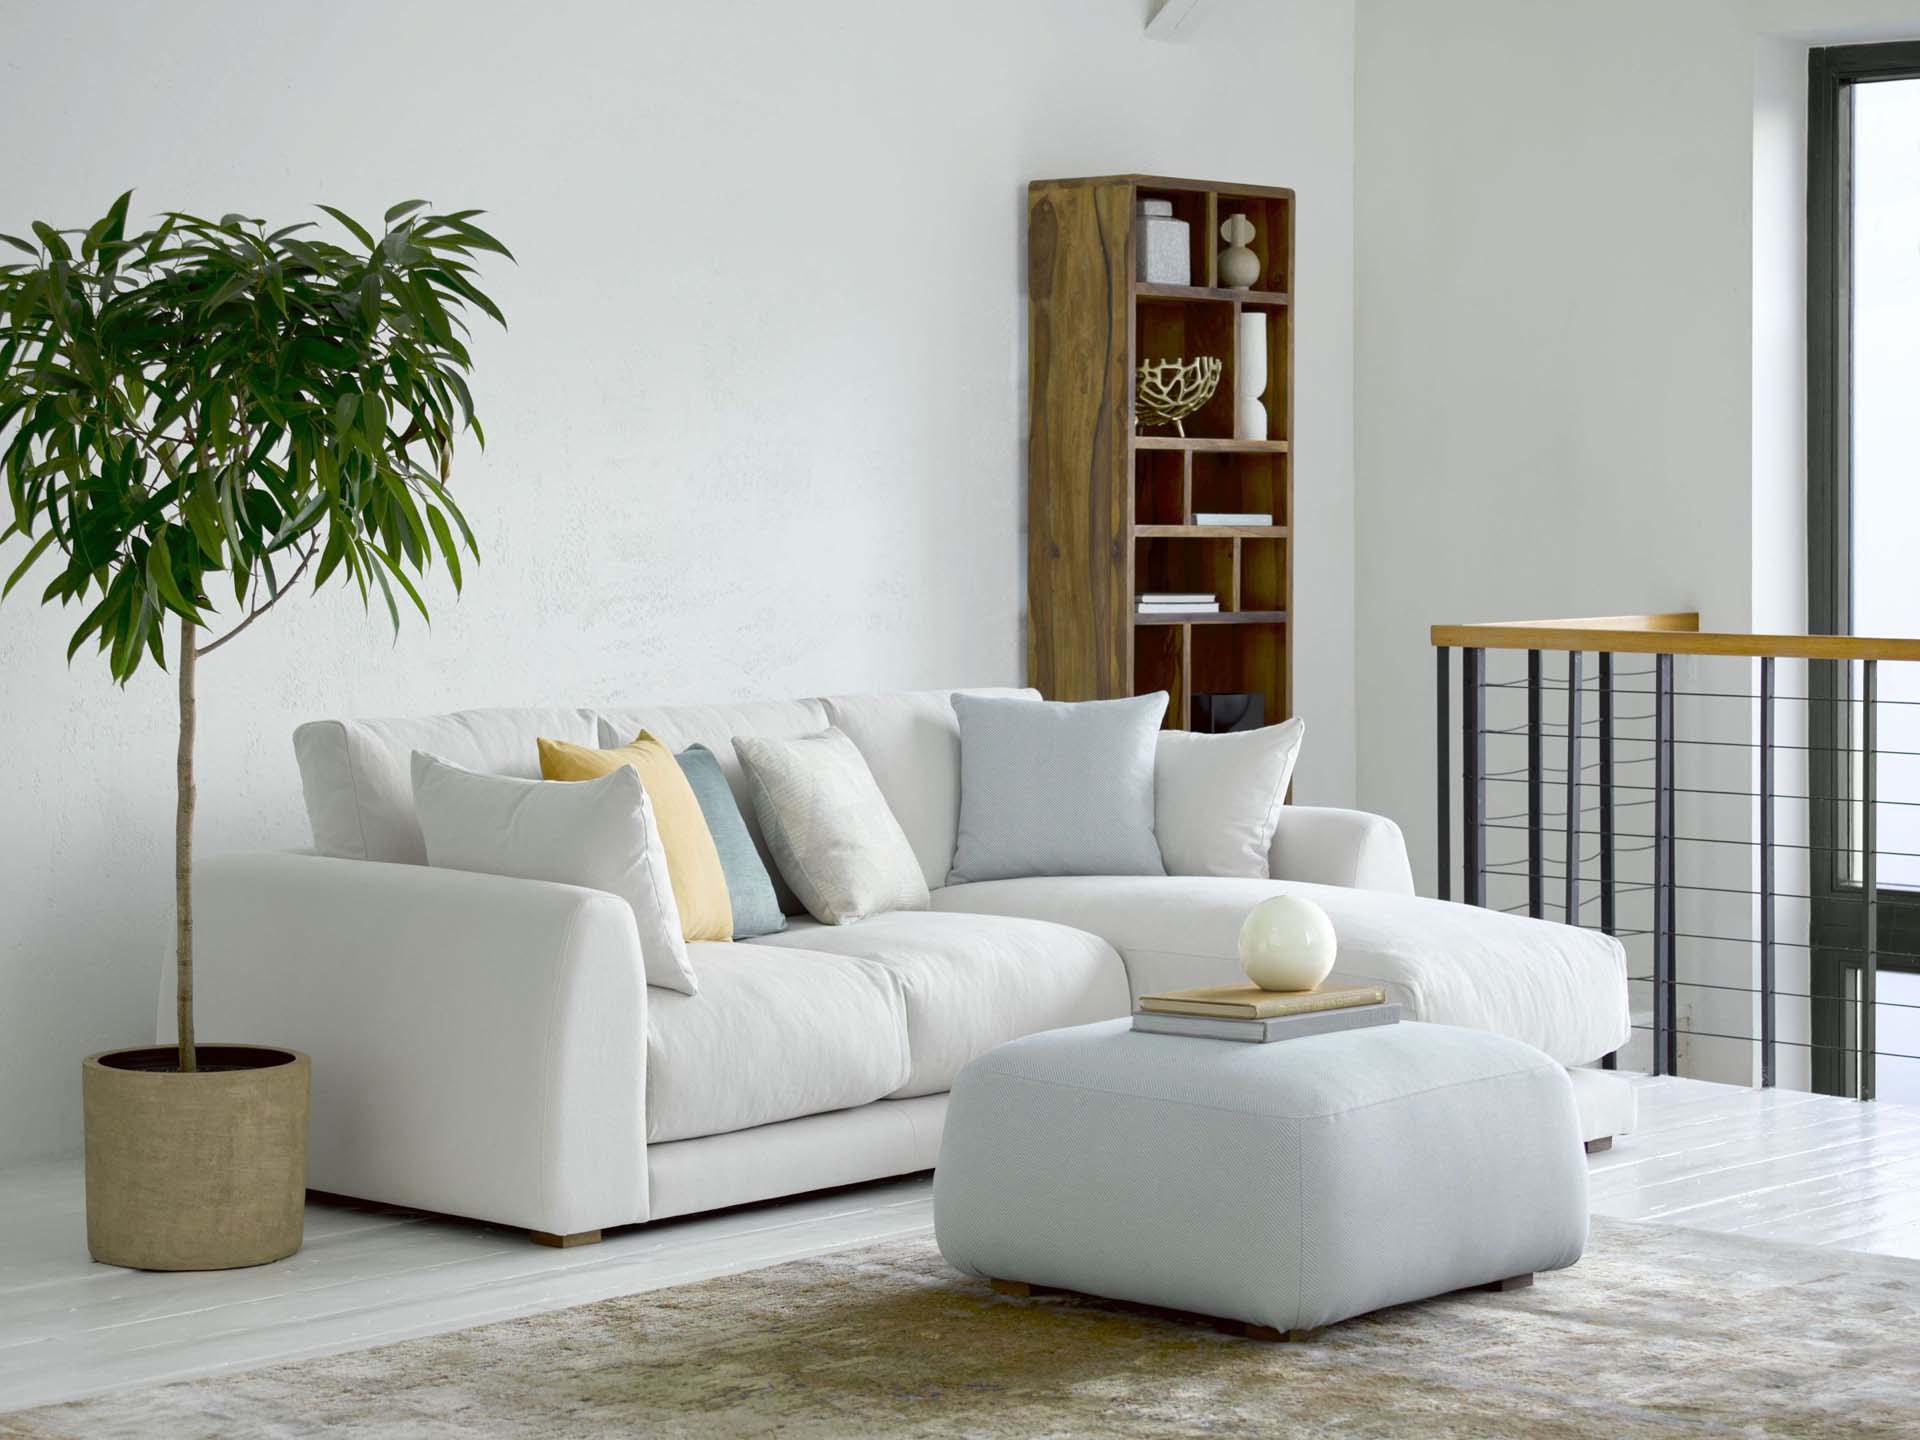 A white sofa in a spacious room